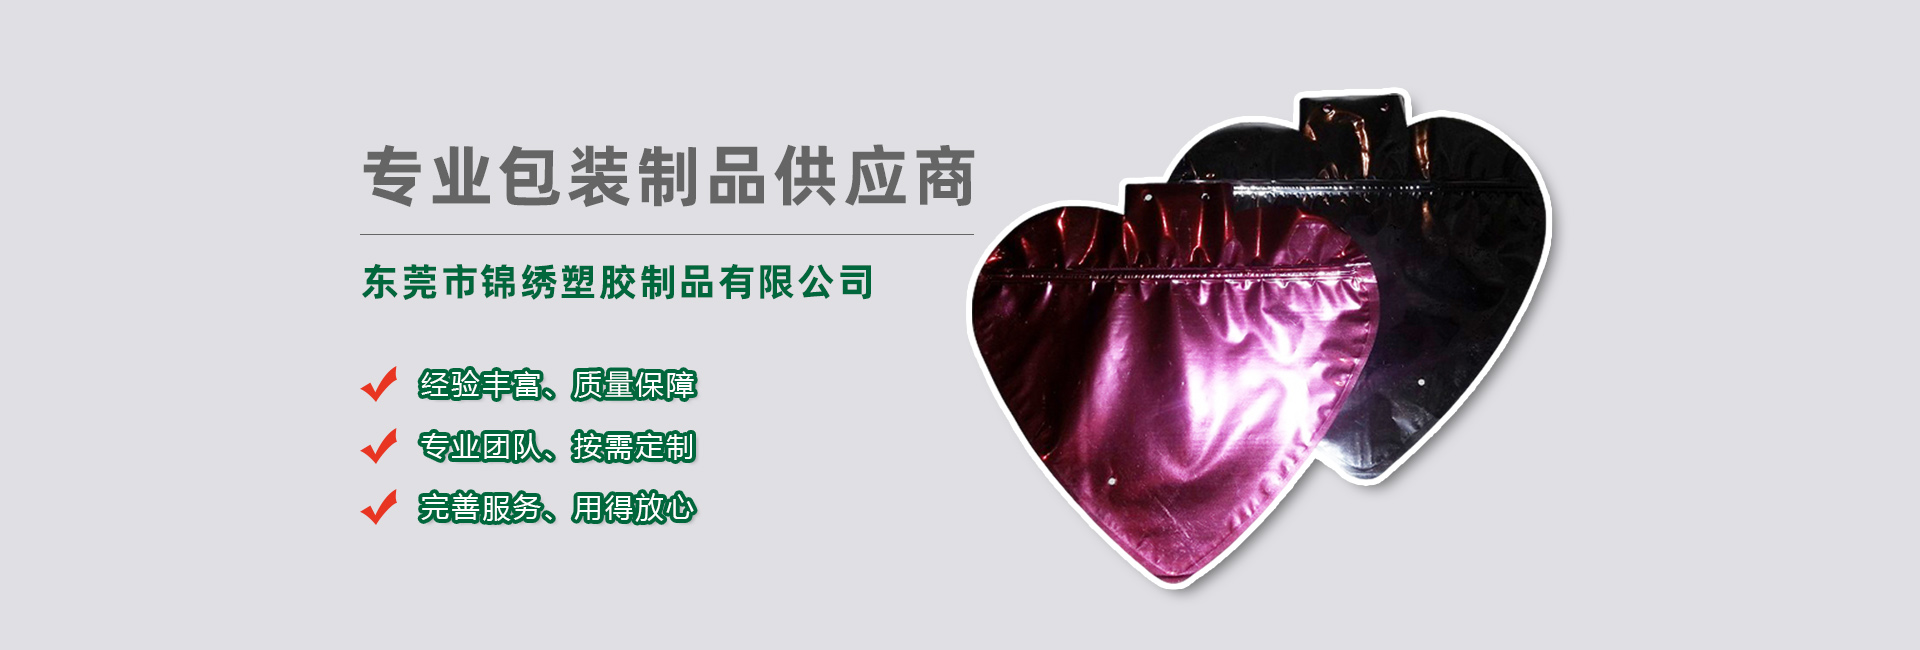 景德镇食品袋banner